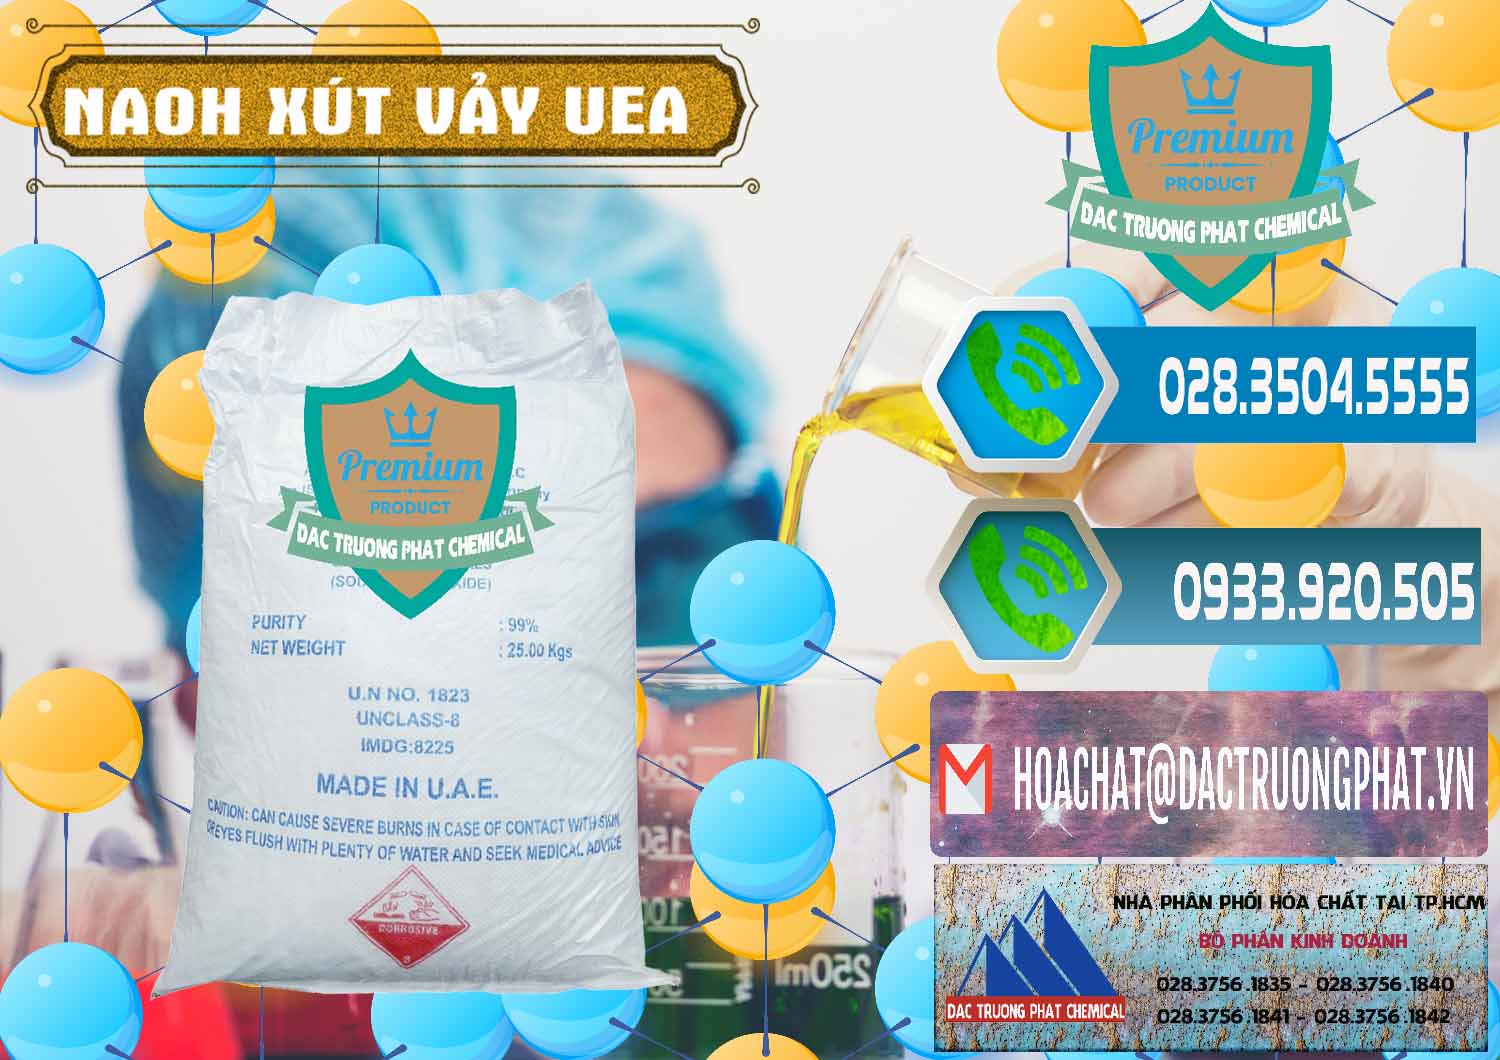 Nơi chuyên bán và cung ứng Xút Vảy - NaOH Vảy UAE Iran - 0432 - Nhà nhập khẩu ( phân phối ) hóa chất tại TP.HCM - congtyhoachat.net